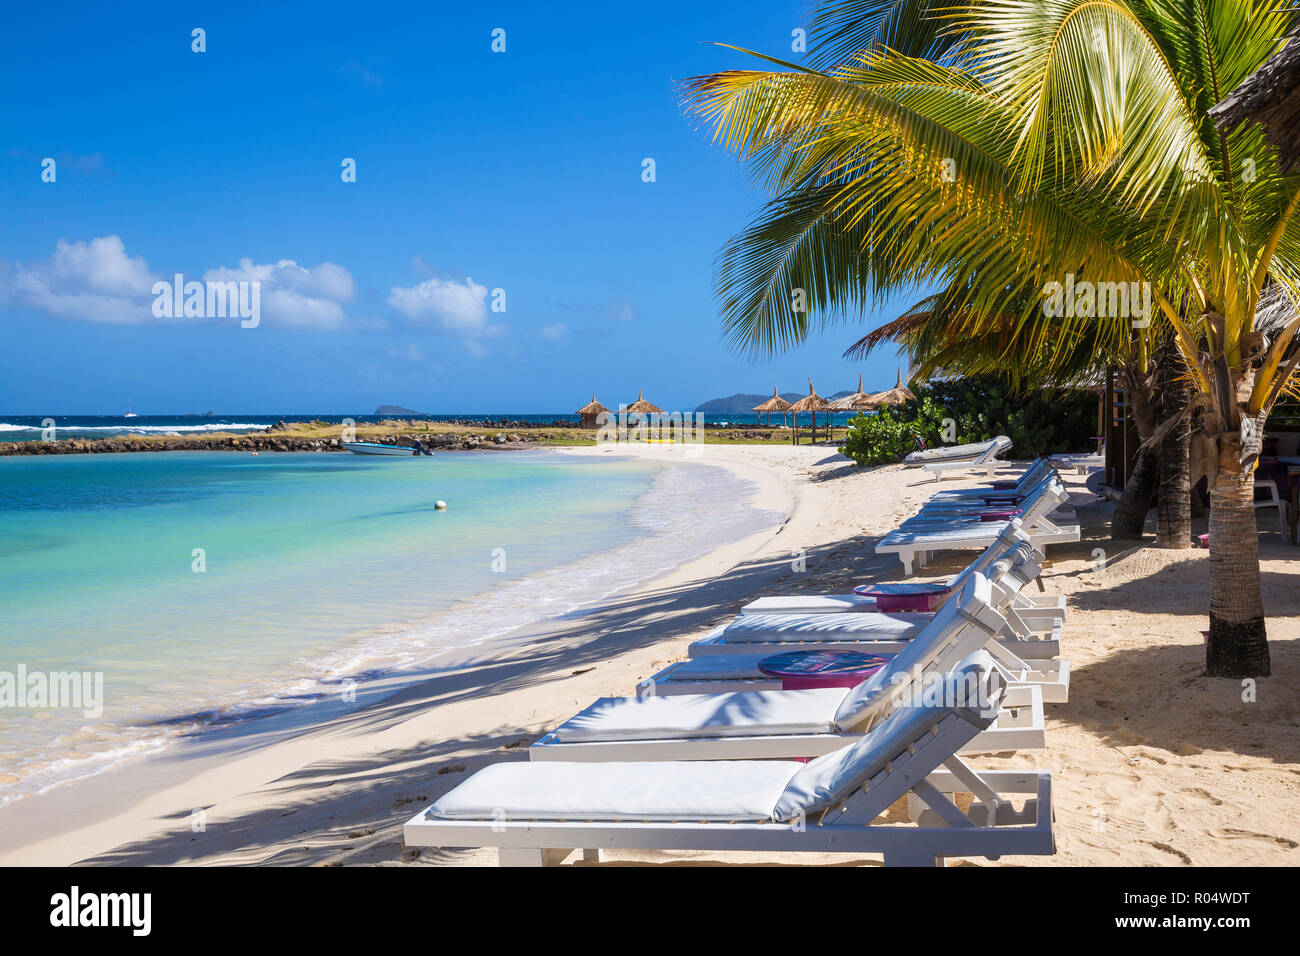 Grande plage des Sables bitumineux à Belmont Bay, Union Island, les Grenadines, Saint Vincent et les Grenadines, Antilles, Caraïbes, Amérique Centrale Banque D'Images